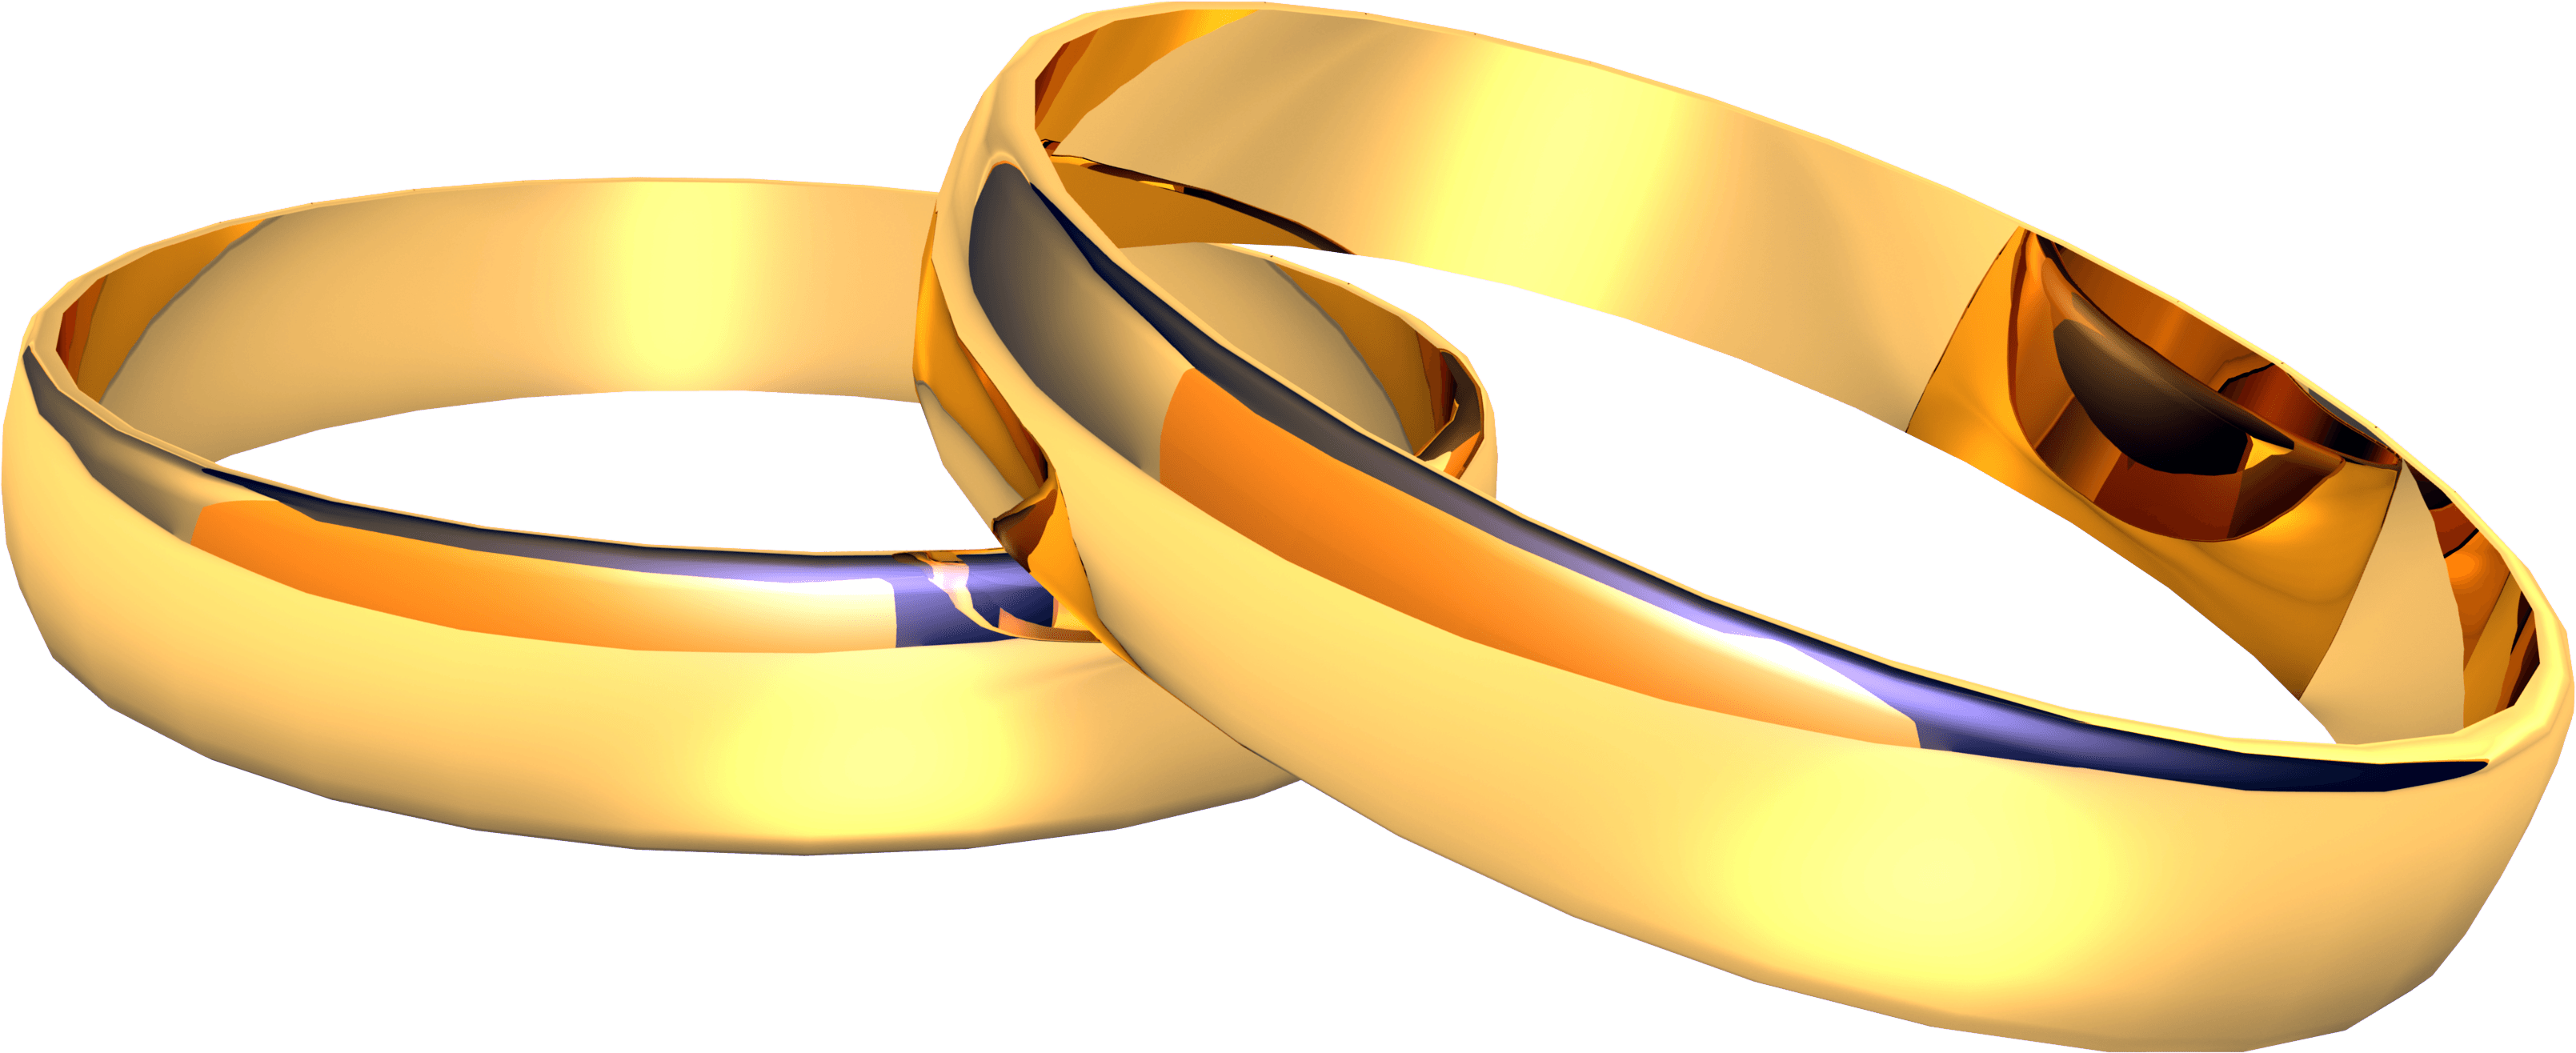 Golden Ring Transparent Image